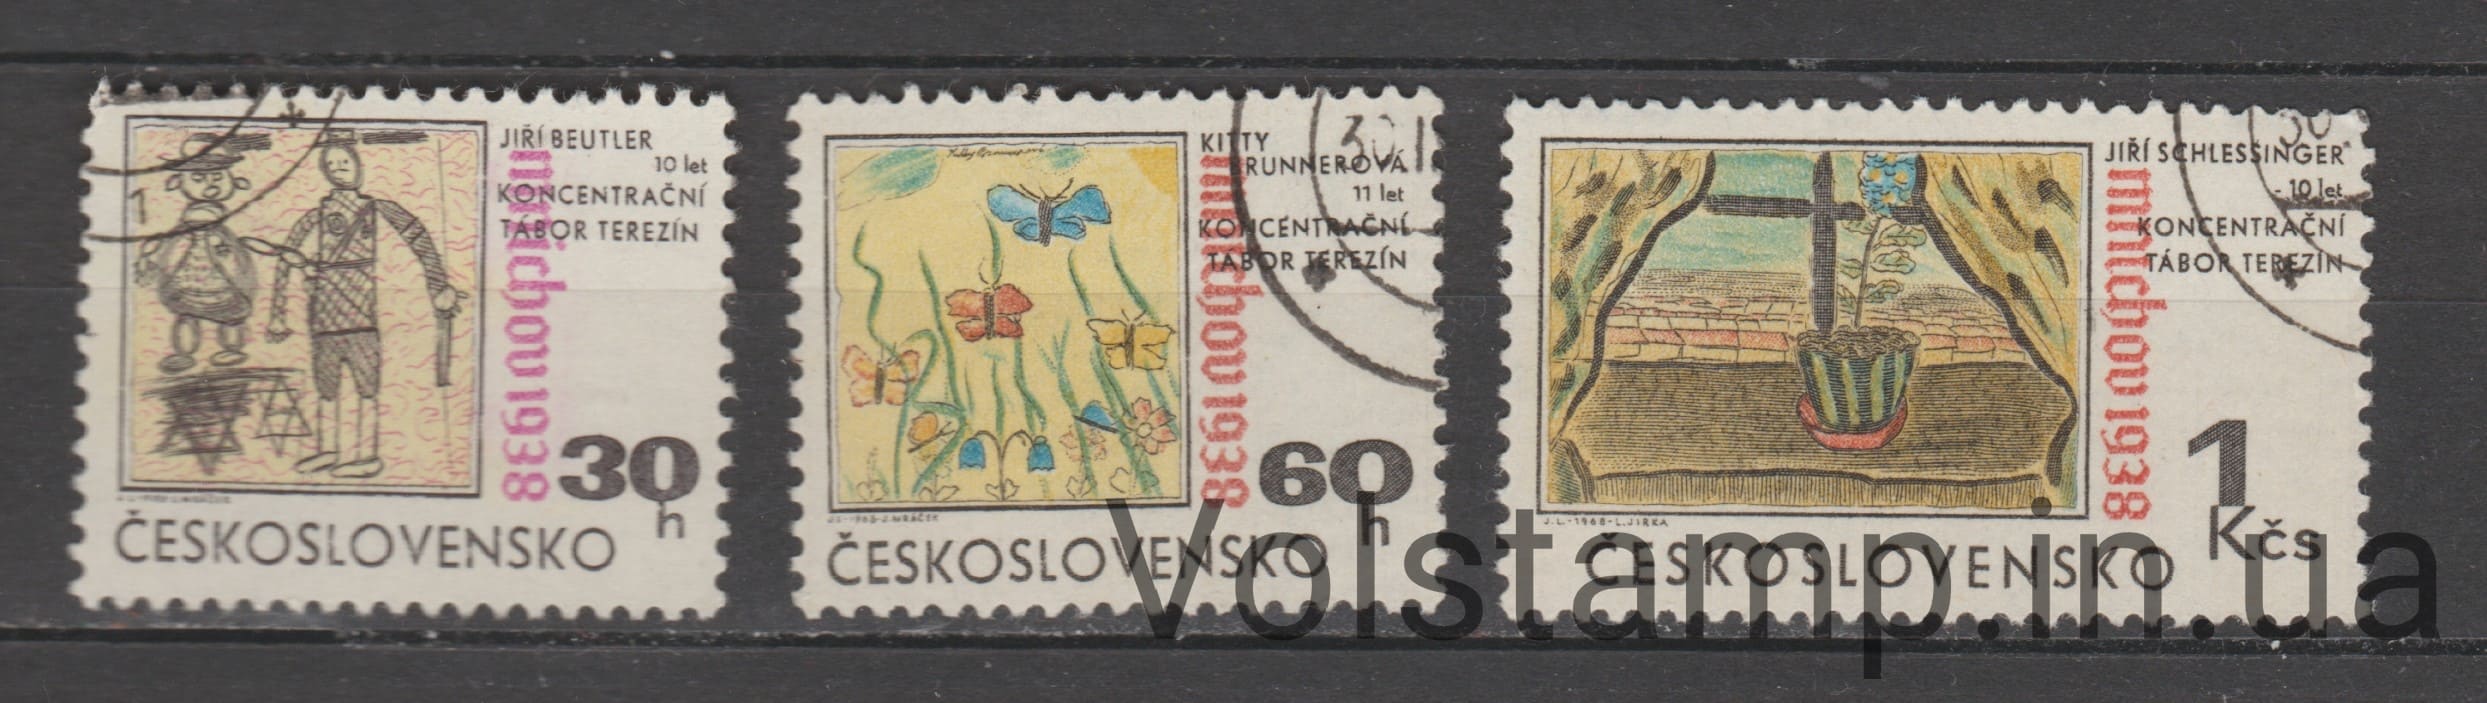 1968 Чехословакия Серия марок (Мюнхенское соглашение, 30 лет — рисунок Чайлдерса) Гашеные №1816-1818